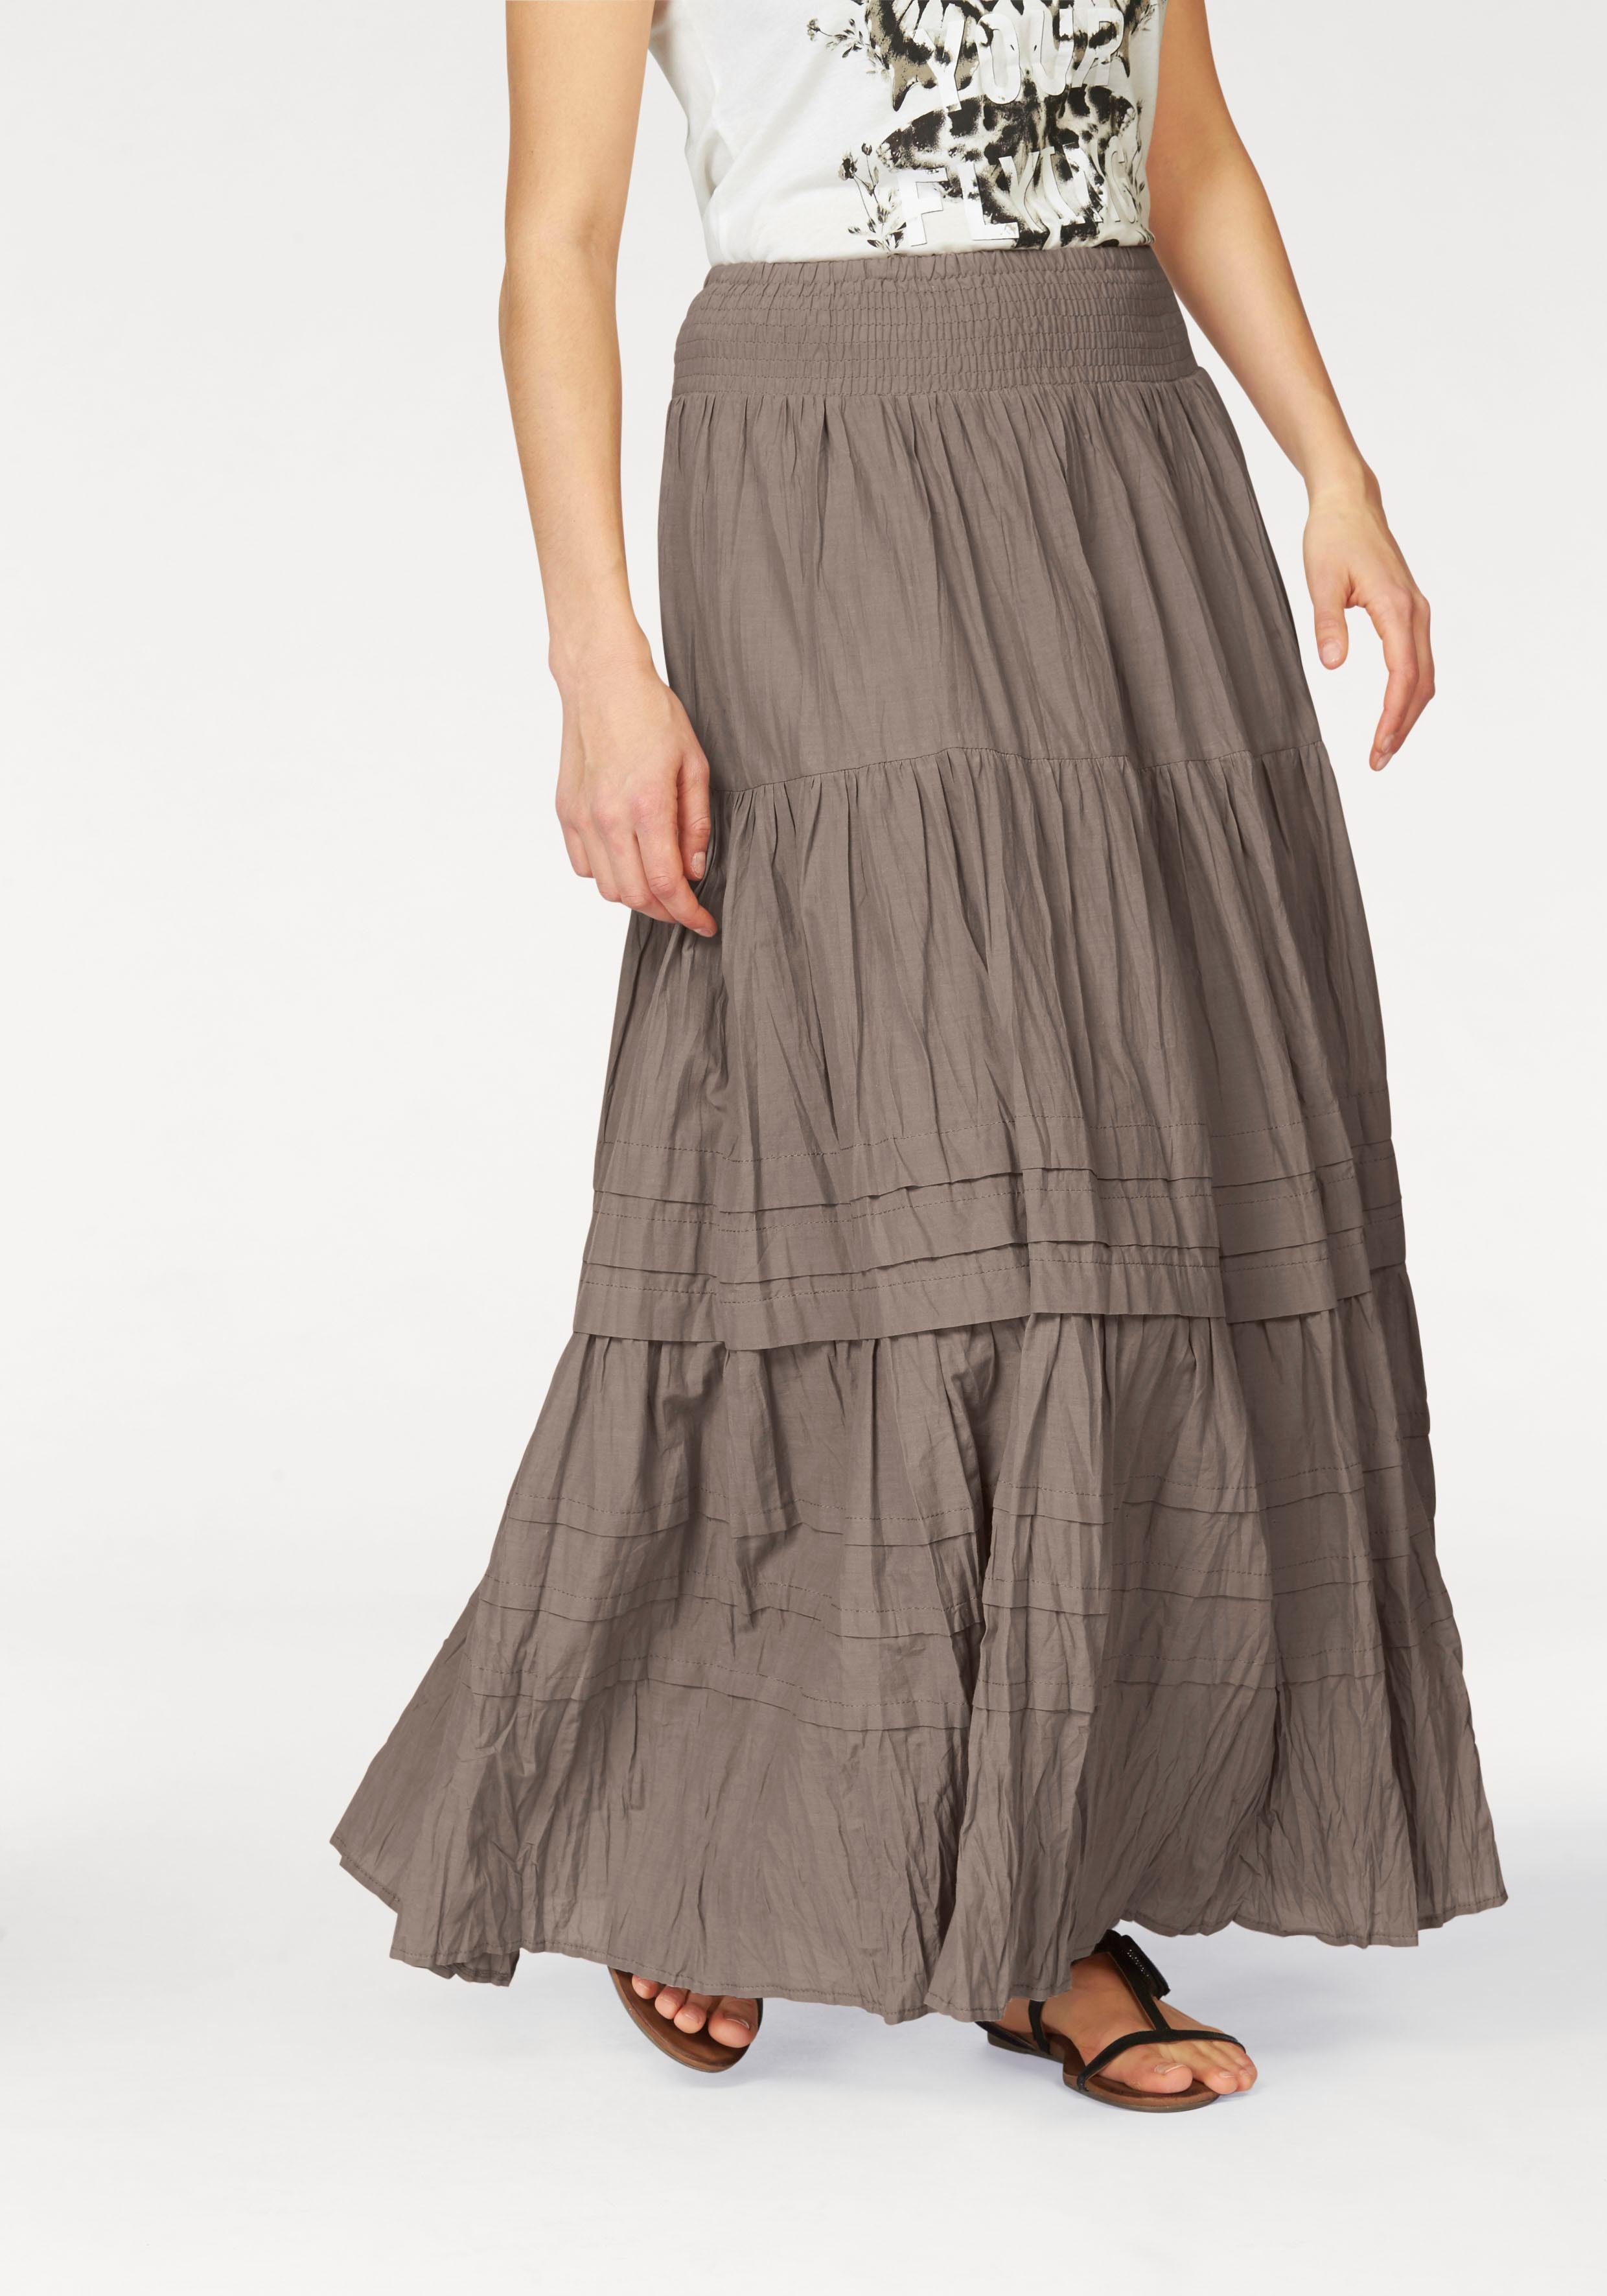 Длинная юбка для полных. Boysen's юбки. Длинная юбка. Длинная юбка ярусами. Многоярусная юбка.